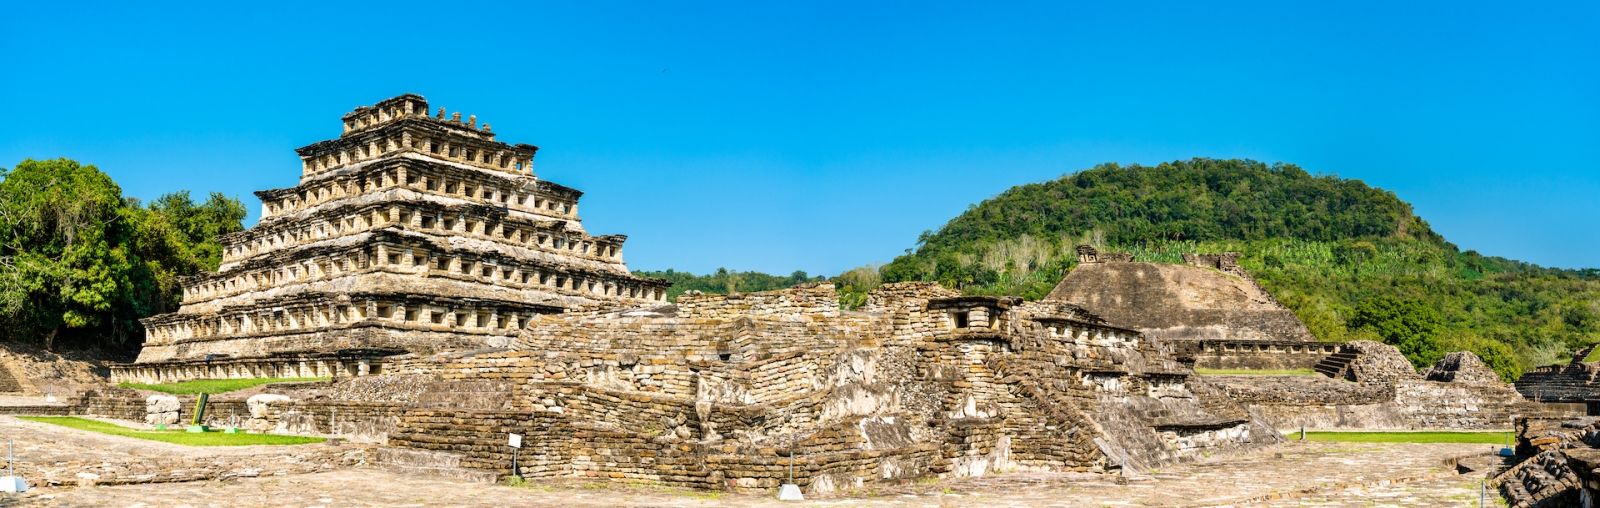 Эль-Тахин, доколумбовый археологический памятник на юге Мексики.